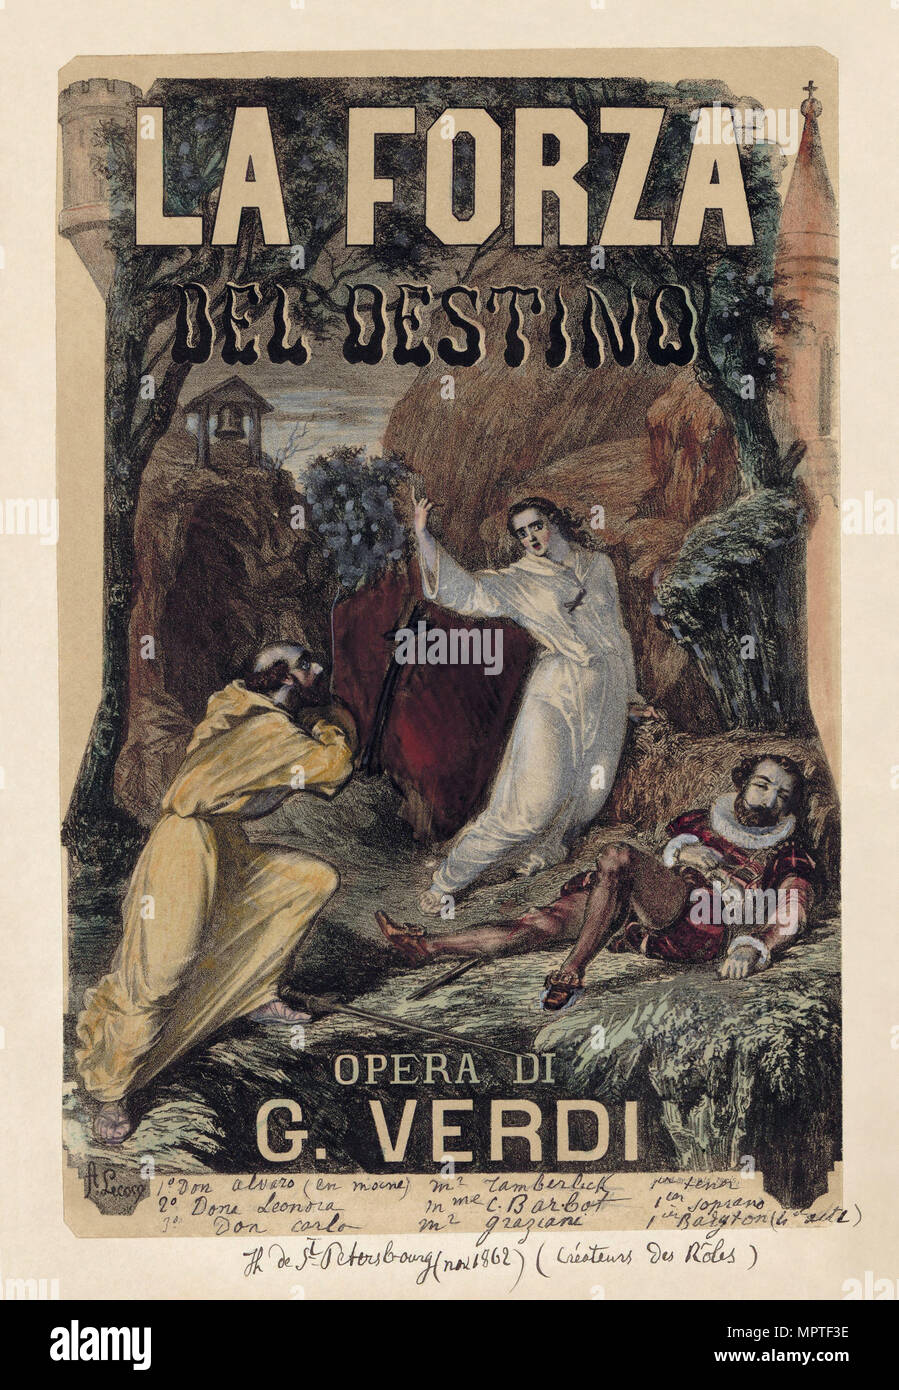 Affiche pour l'opéra La forza del destino de Giuseppe Verdi, c. 1870. Banque D'Images